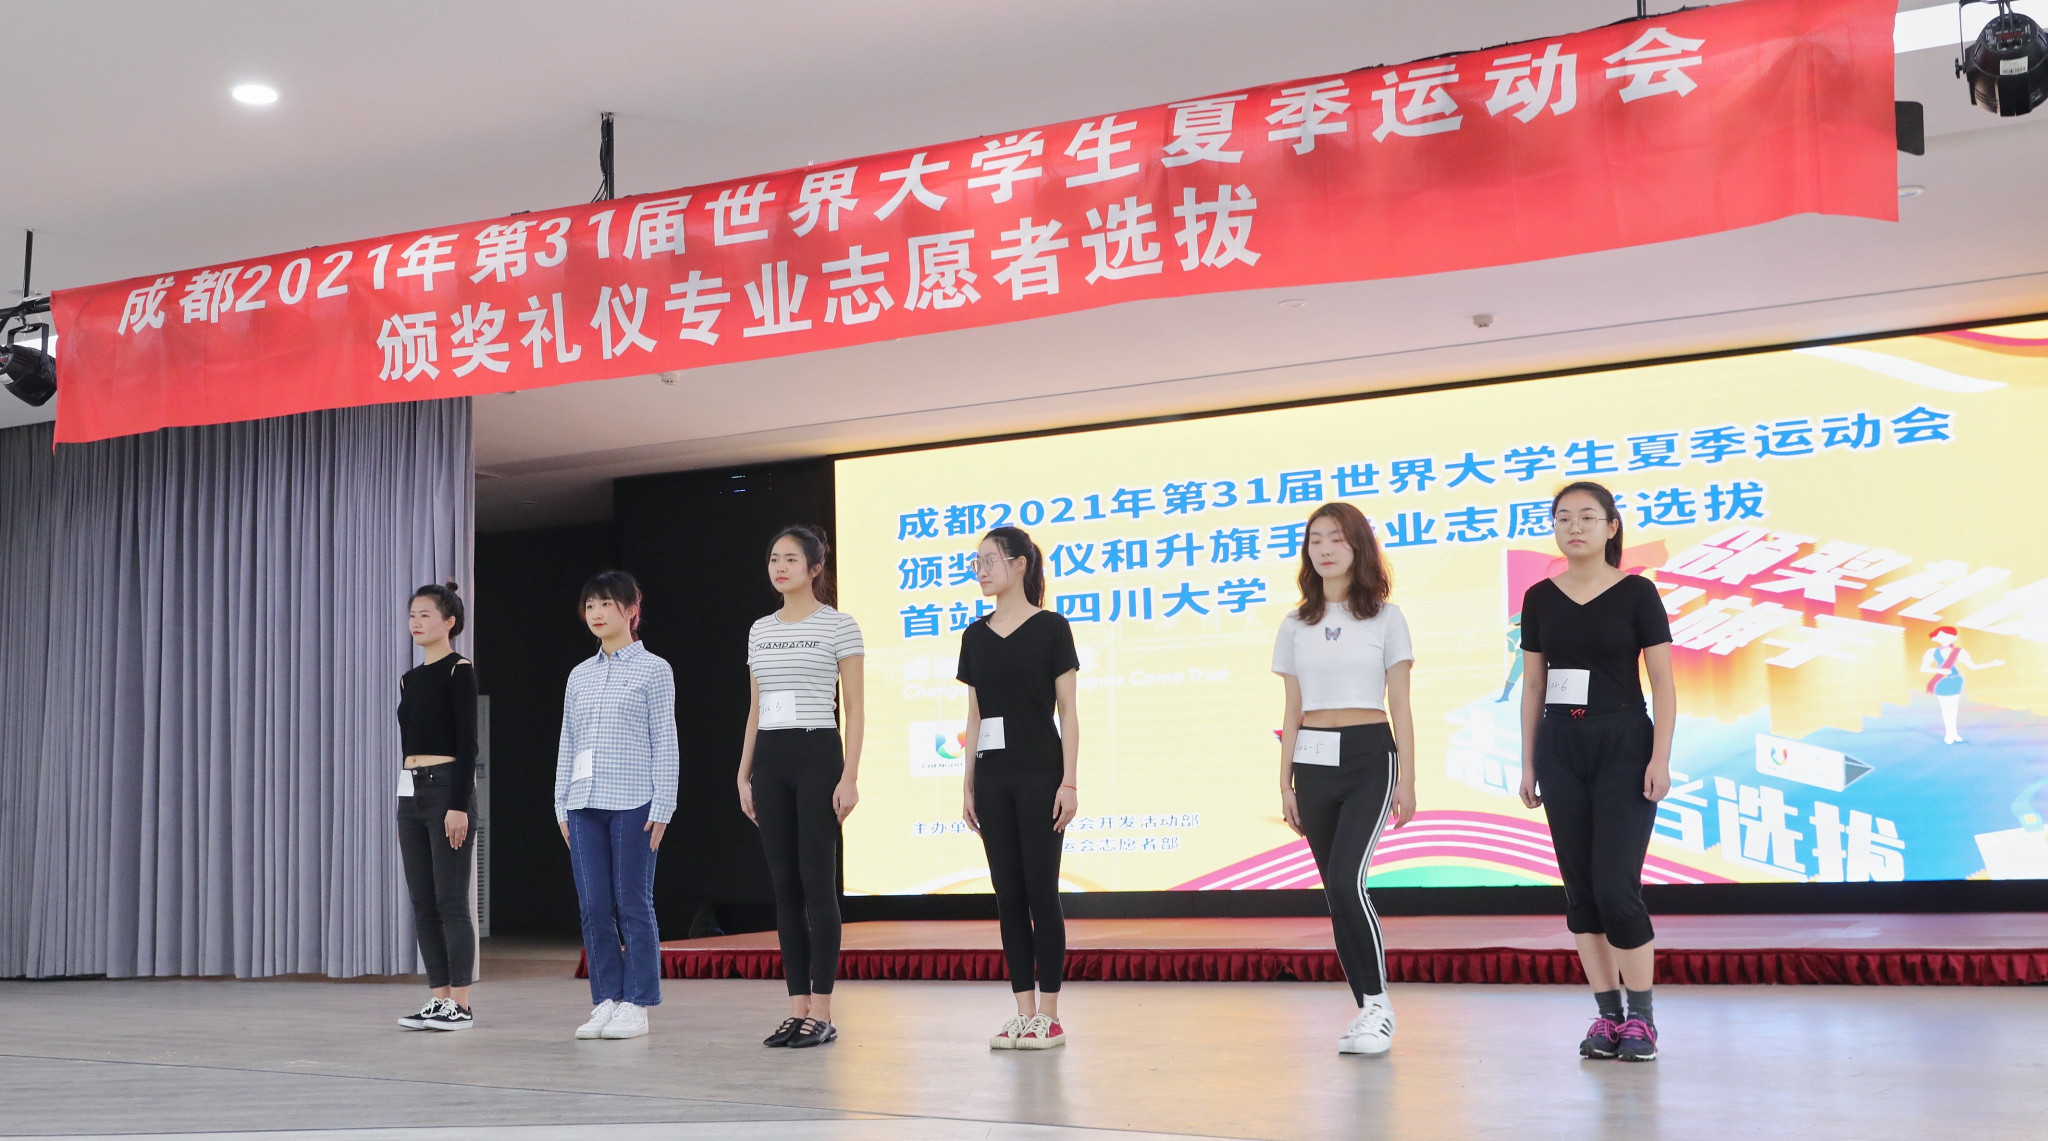 Chengdu 2021 has begun selected volunteers for ceremonies ©Chengdu 2021